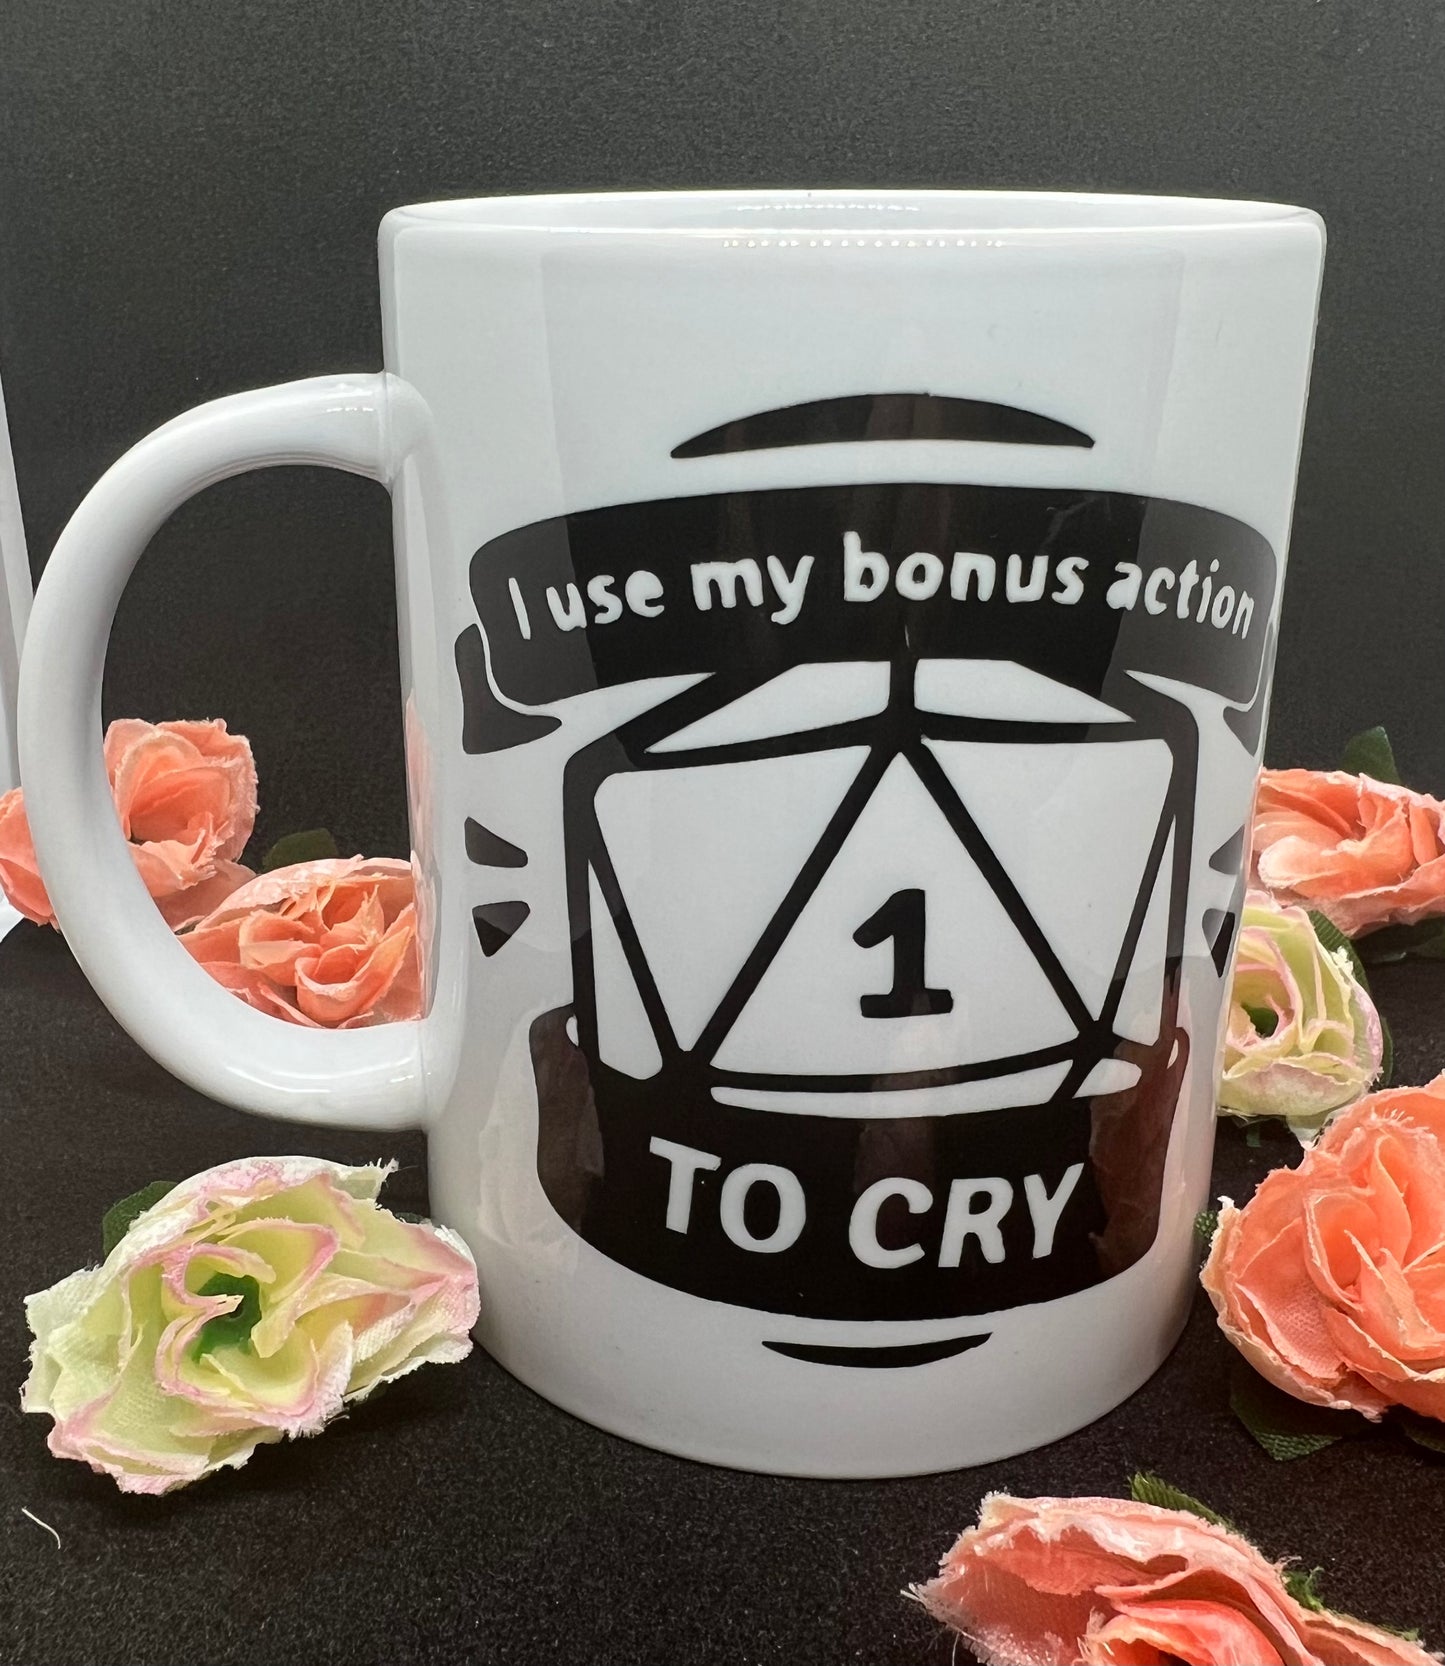 DND Mug - ""I Use My Bonus Action To Cry"", Dungeons and Dragons Mug for DM and Players, Funny Ceramic Mug Gift for Tea and Coffee